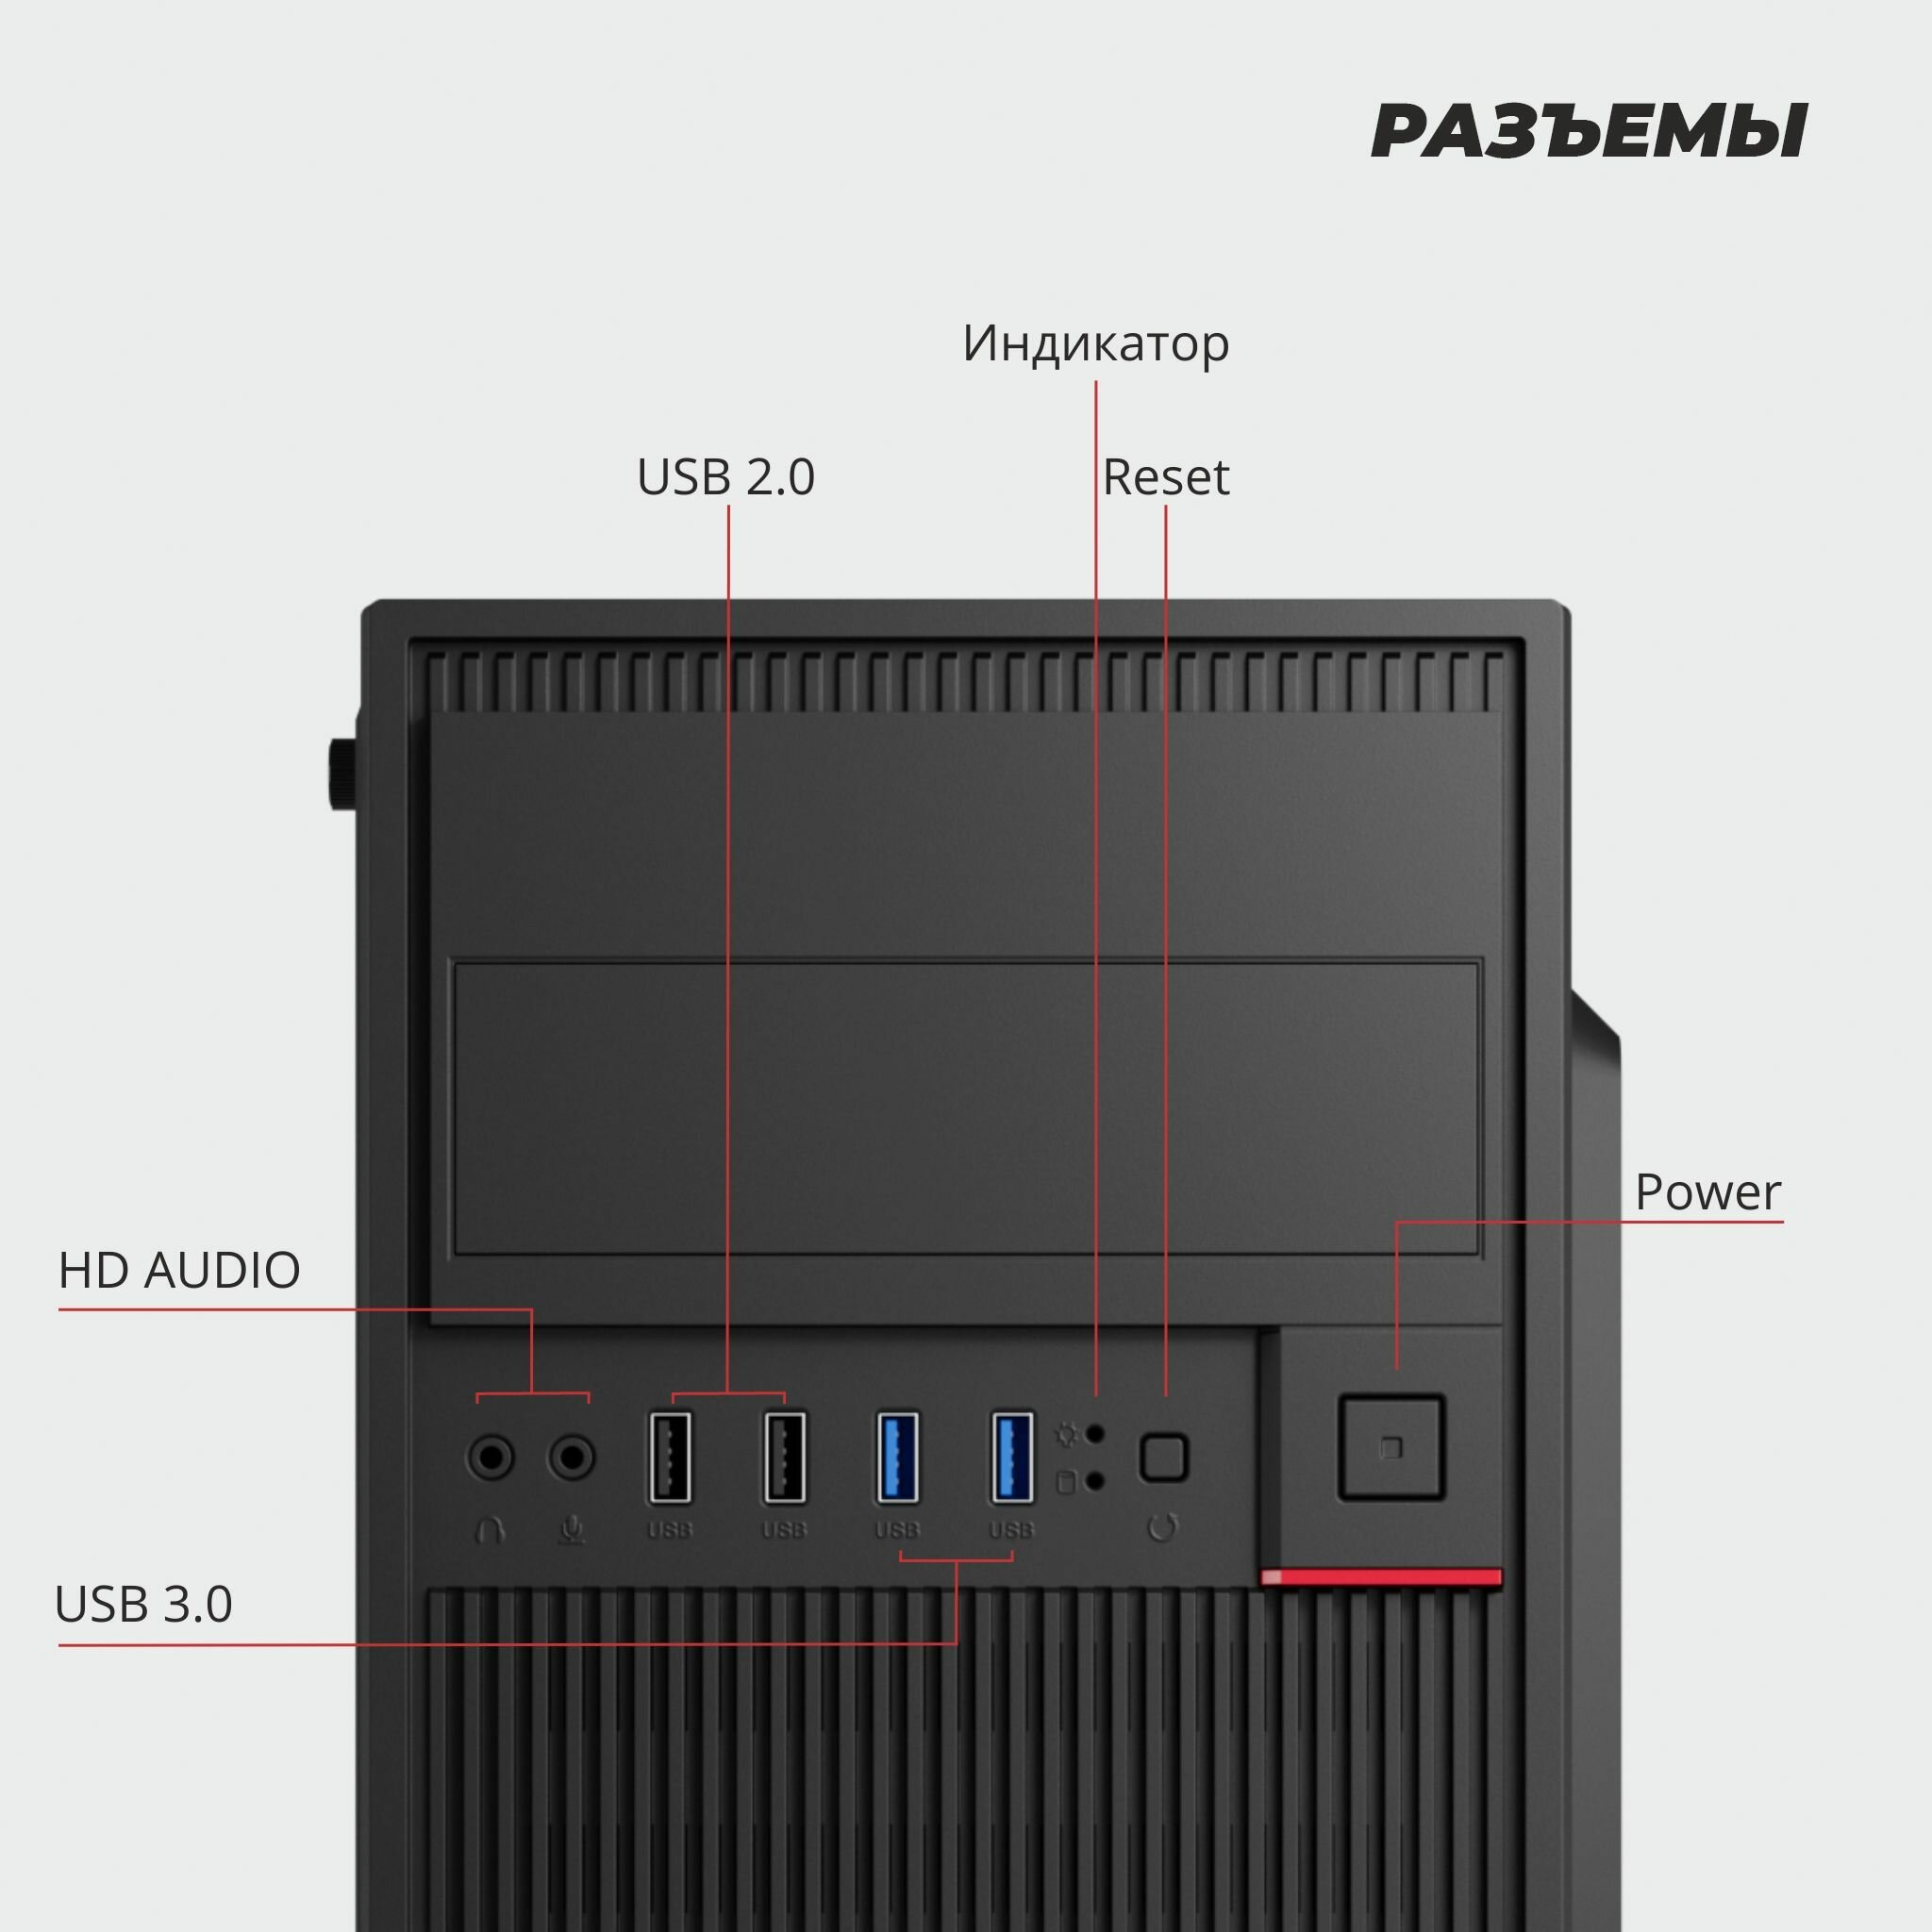 Корпус Prime Box S715 (2 - USB 2.0, 2 - USB 3.0) черный ATX, Micro-ATX, Mini-ITX